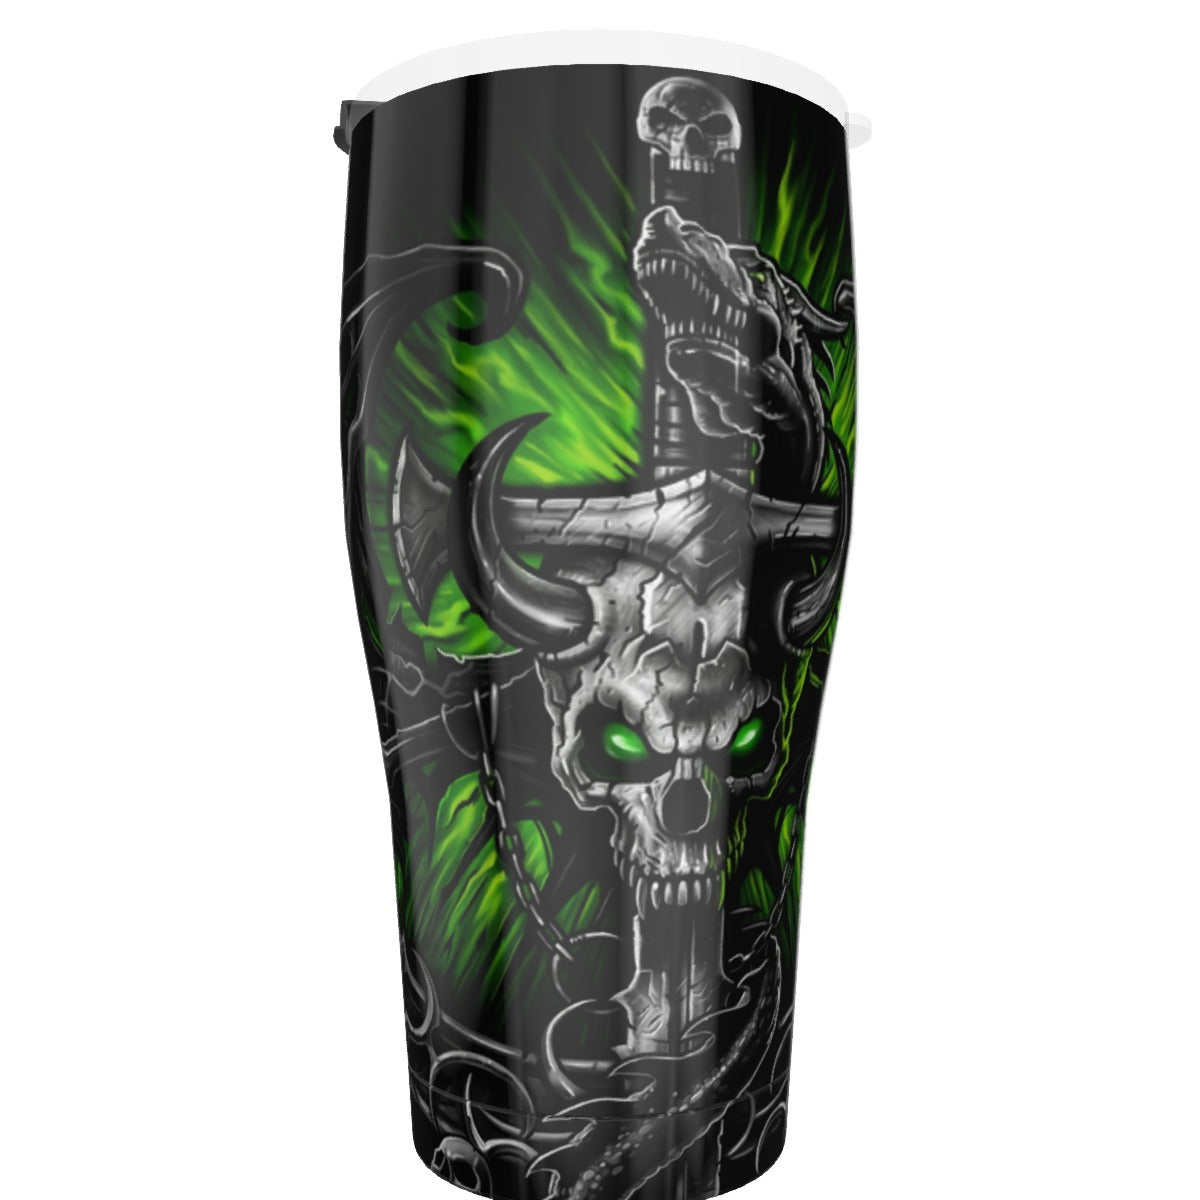 Dragon skull Tumbler 30oz, Gothic skull tumbler cup mug